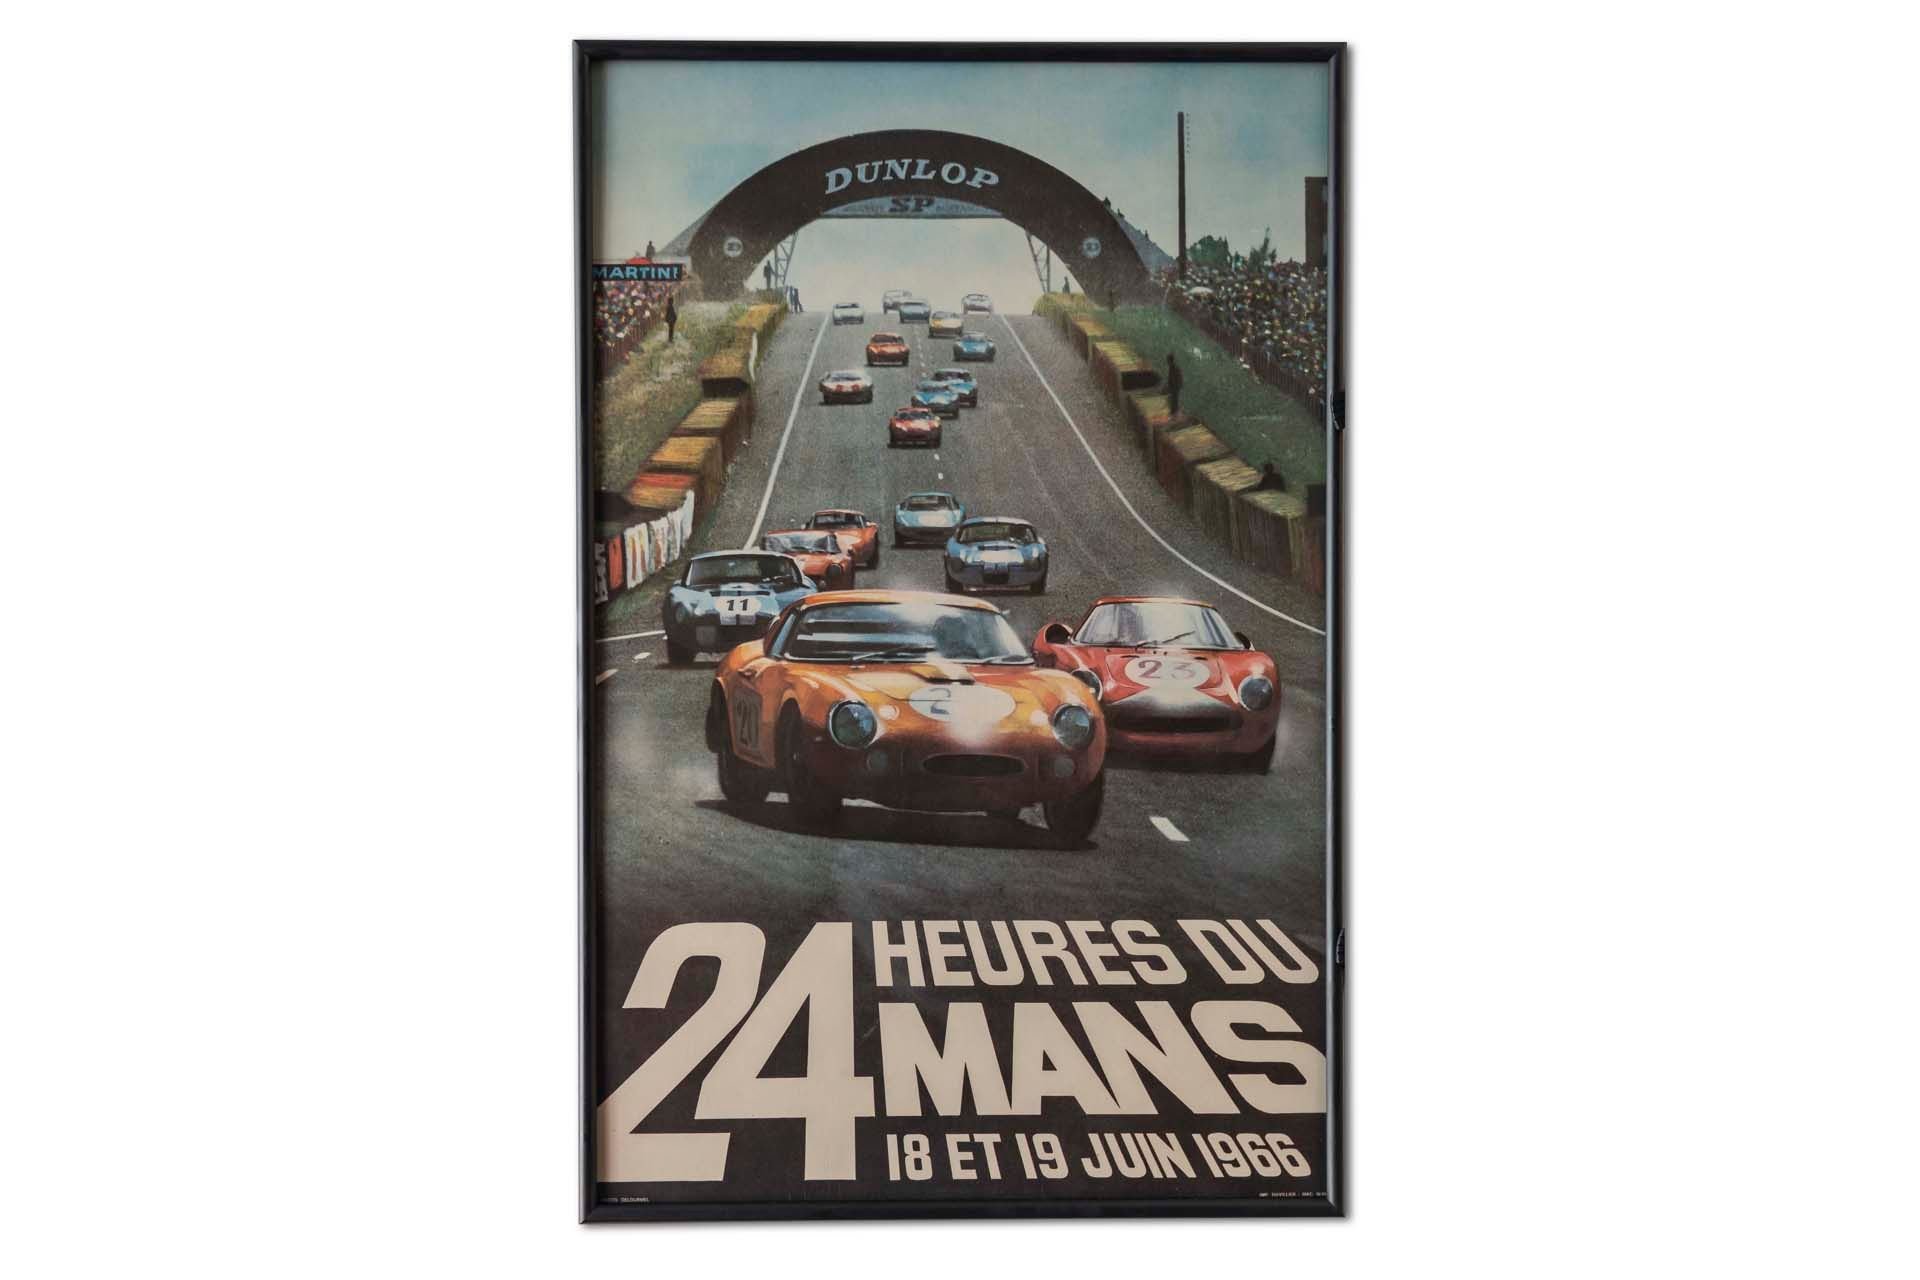 For Sale Framed Original '1966 24 heures du Mans' Event Poster